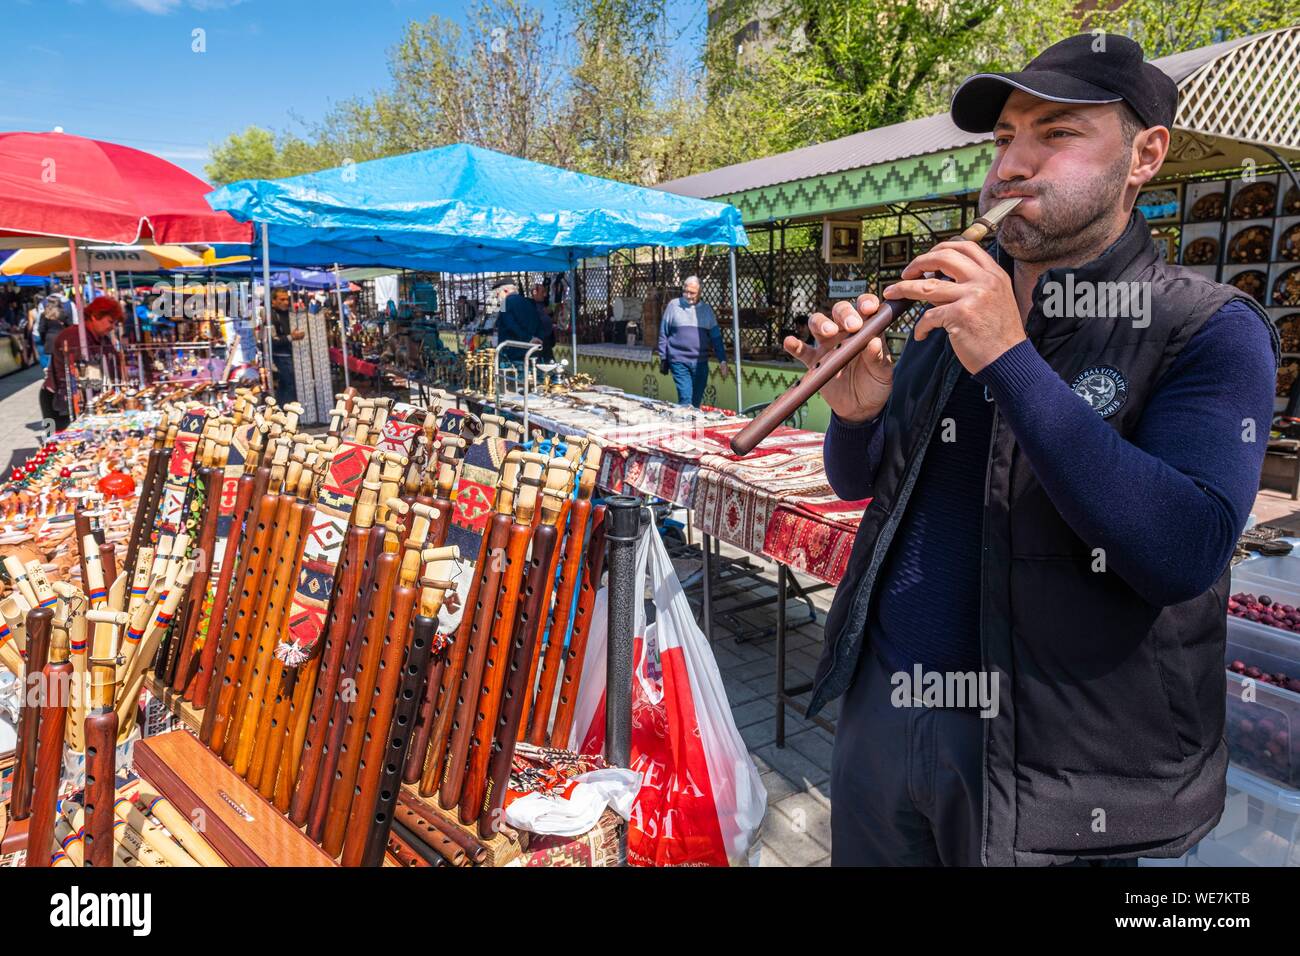 Armenia, Yerevan, Vernissage, open-air mostra-mercato funzionamento durante i fine settimana, la vendita di duduk, oboe principalmente svolto nel Caucaso e uno dei simboli della musica armena Foto Stock